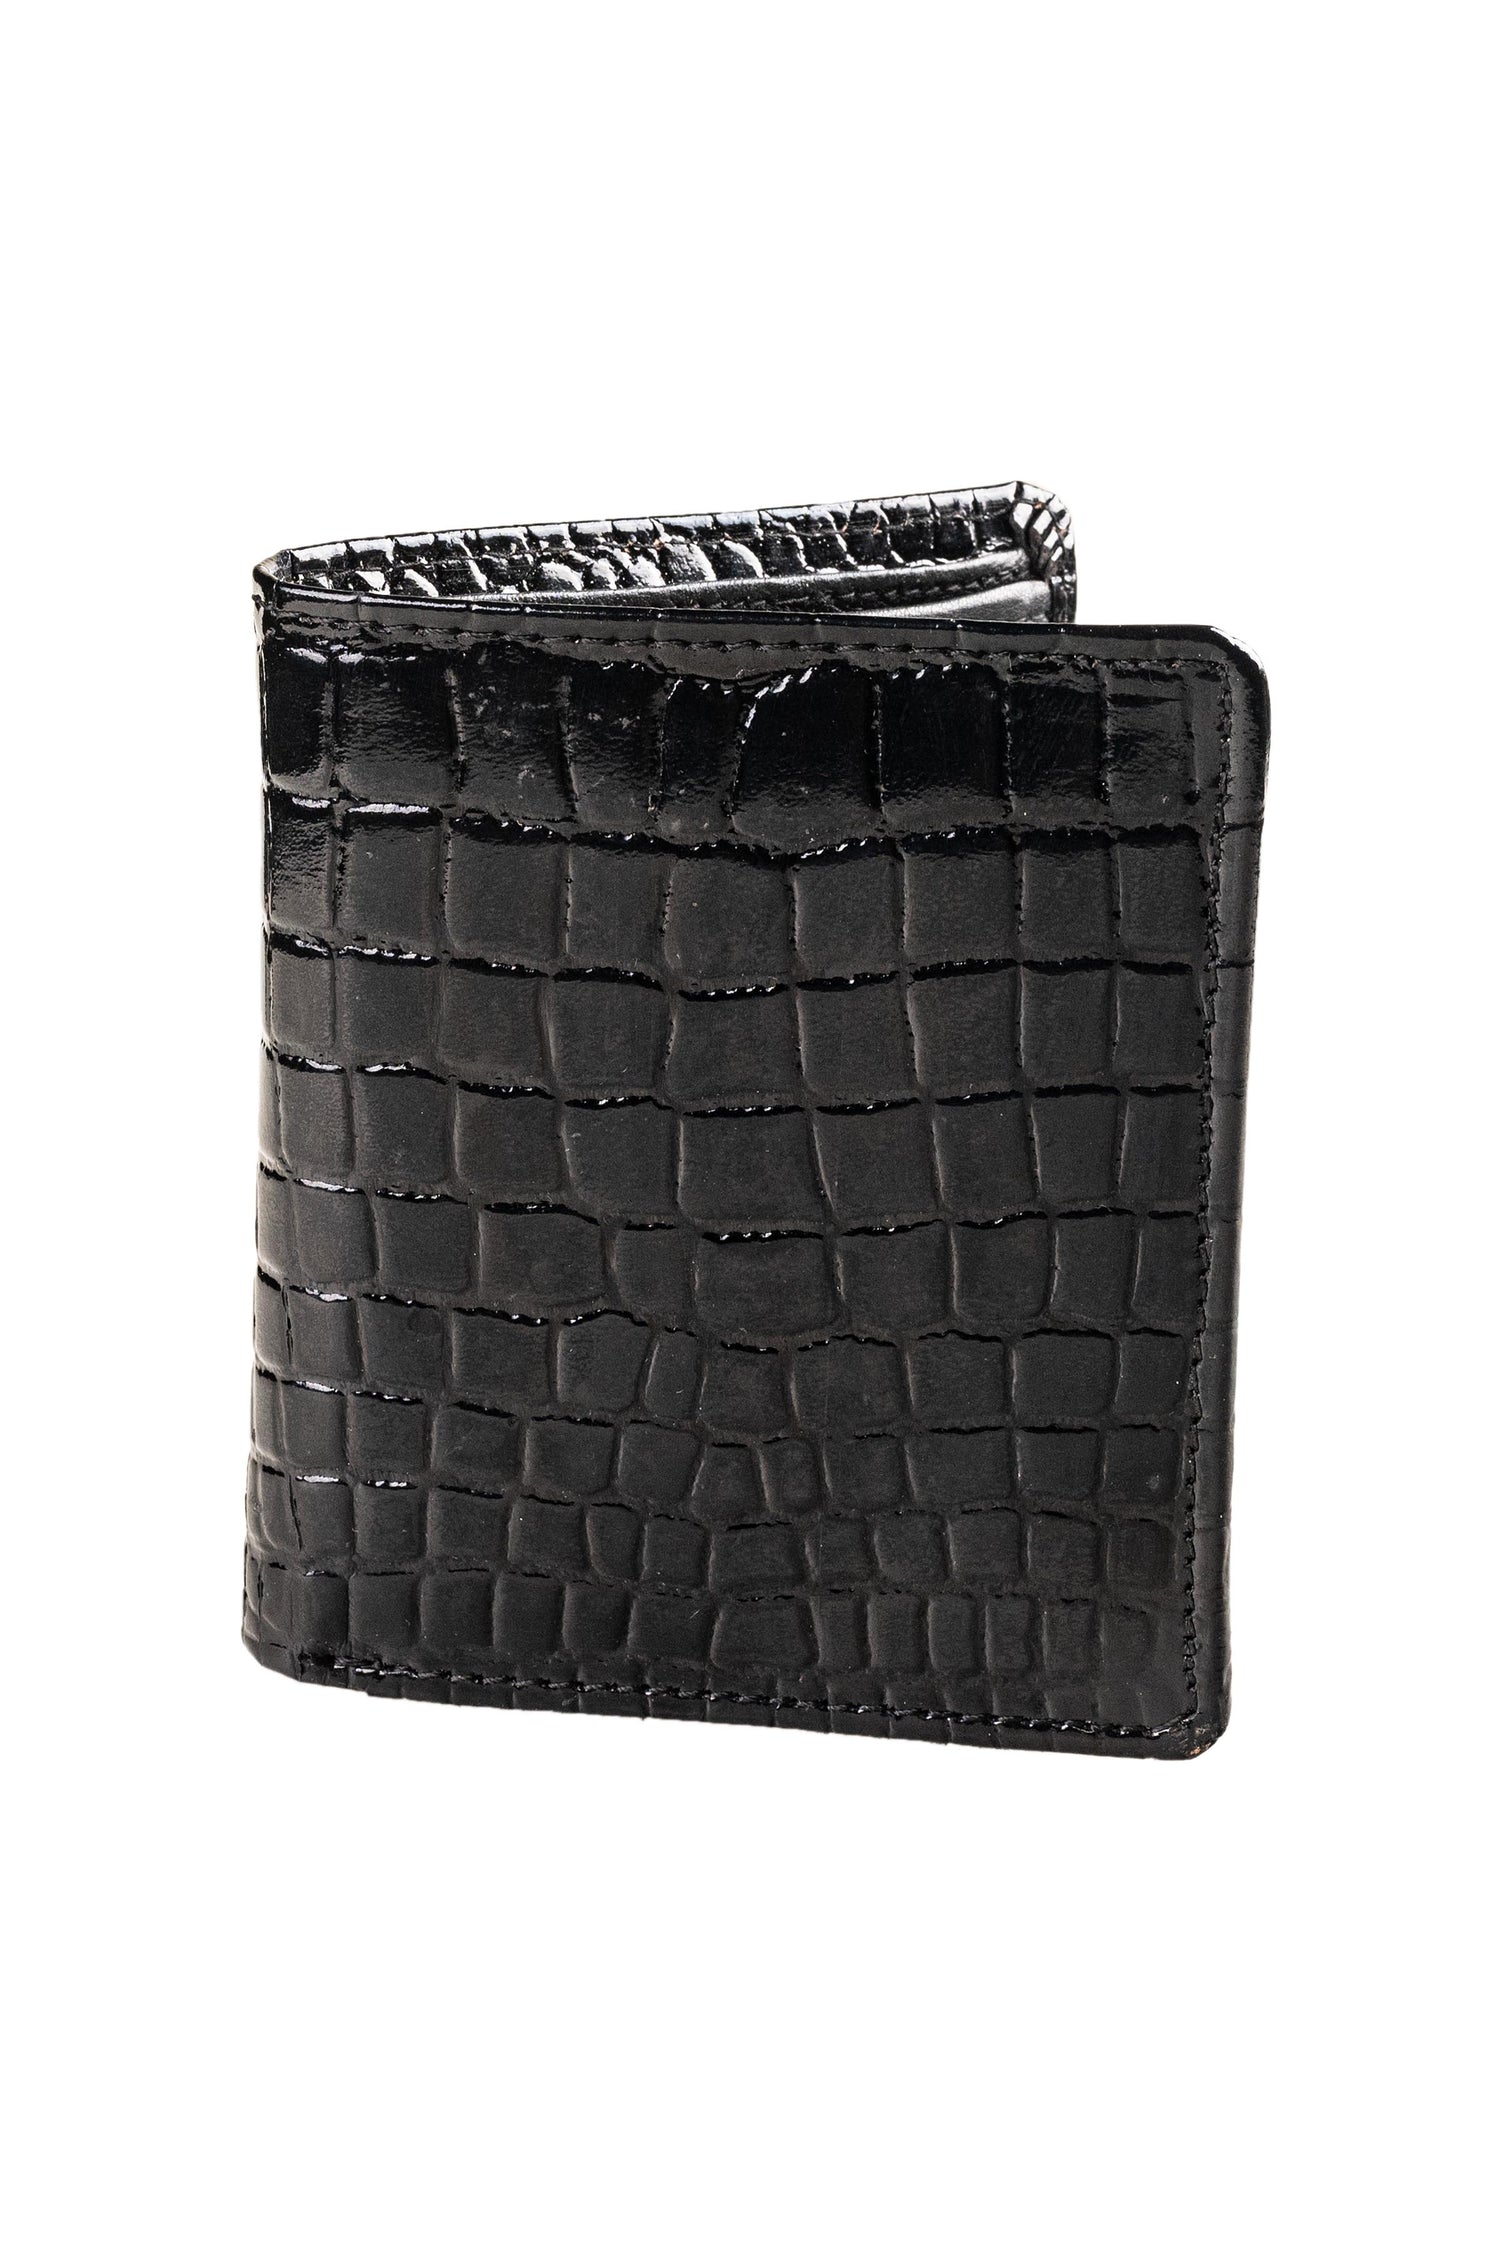 Titas Gents Black Genuine Leather Wallet